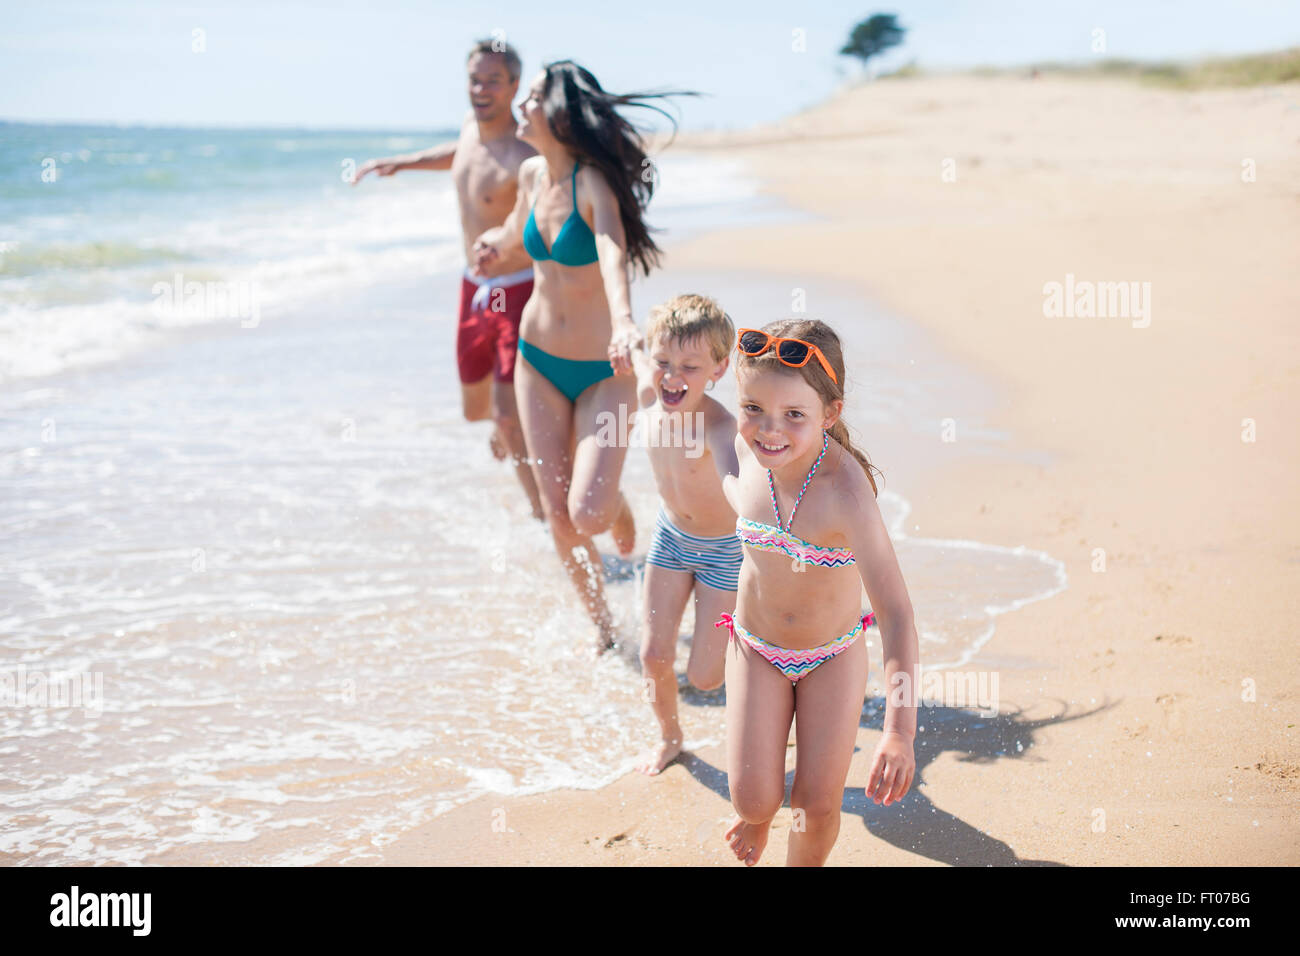 нудистский пляж с голыми детьми фото 111